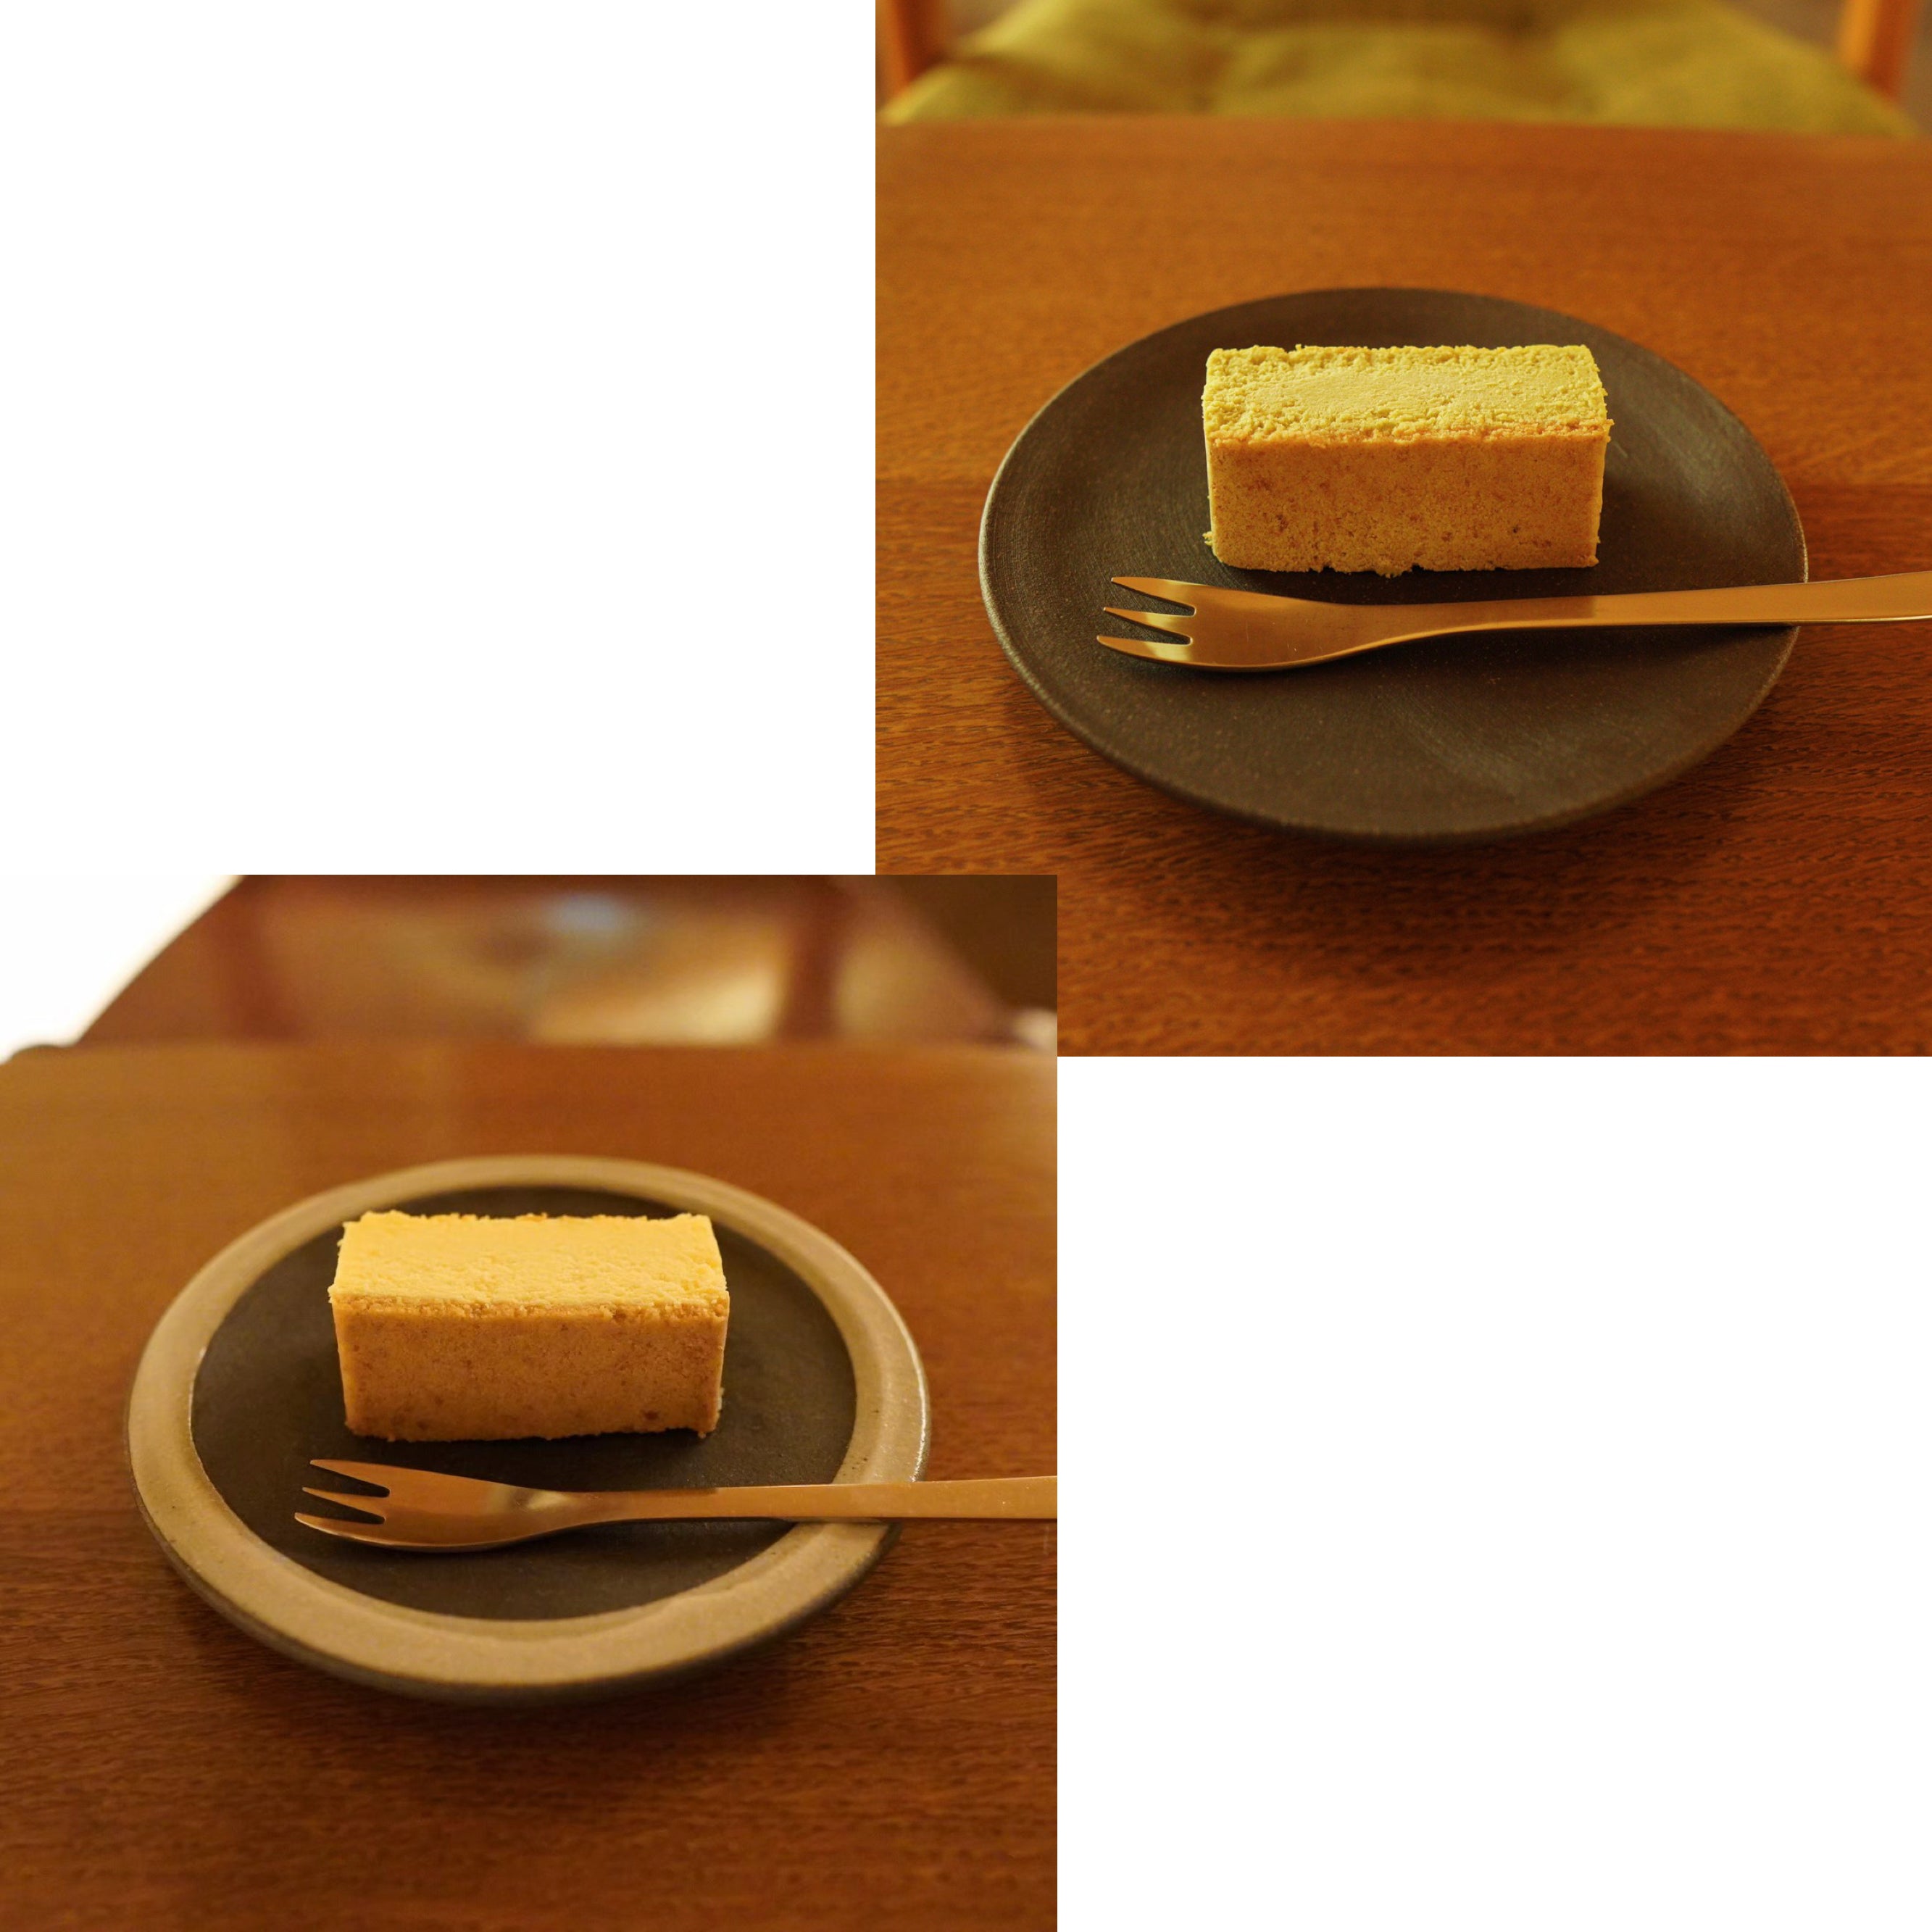 贅沢チーズケーキ二種 プレーン・朝宮煎茶